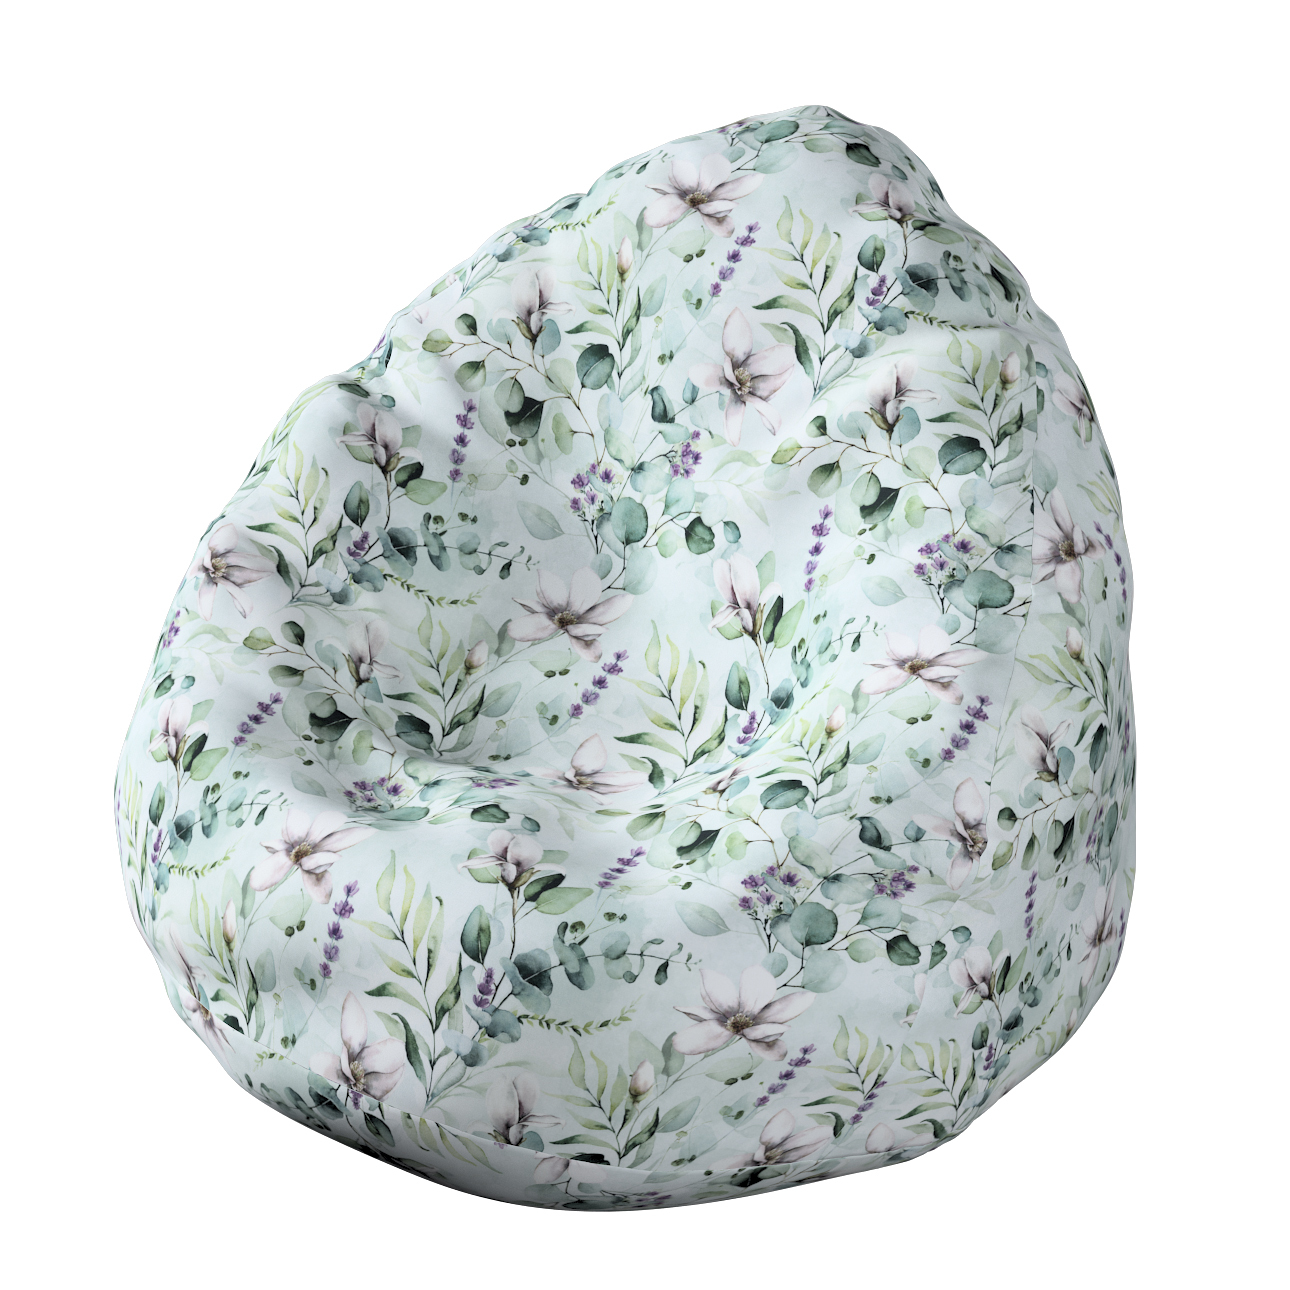 Bezug für Sitzsack, mintgrün-weiß, Bezug für Sitzsack Ø80 x 115 cm, Flowers günstig online kaufen